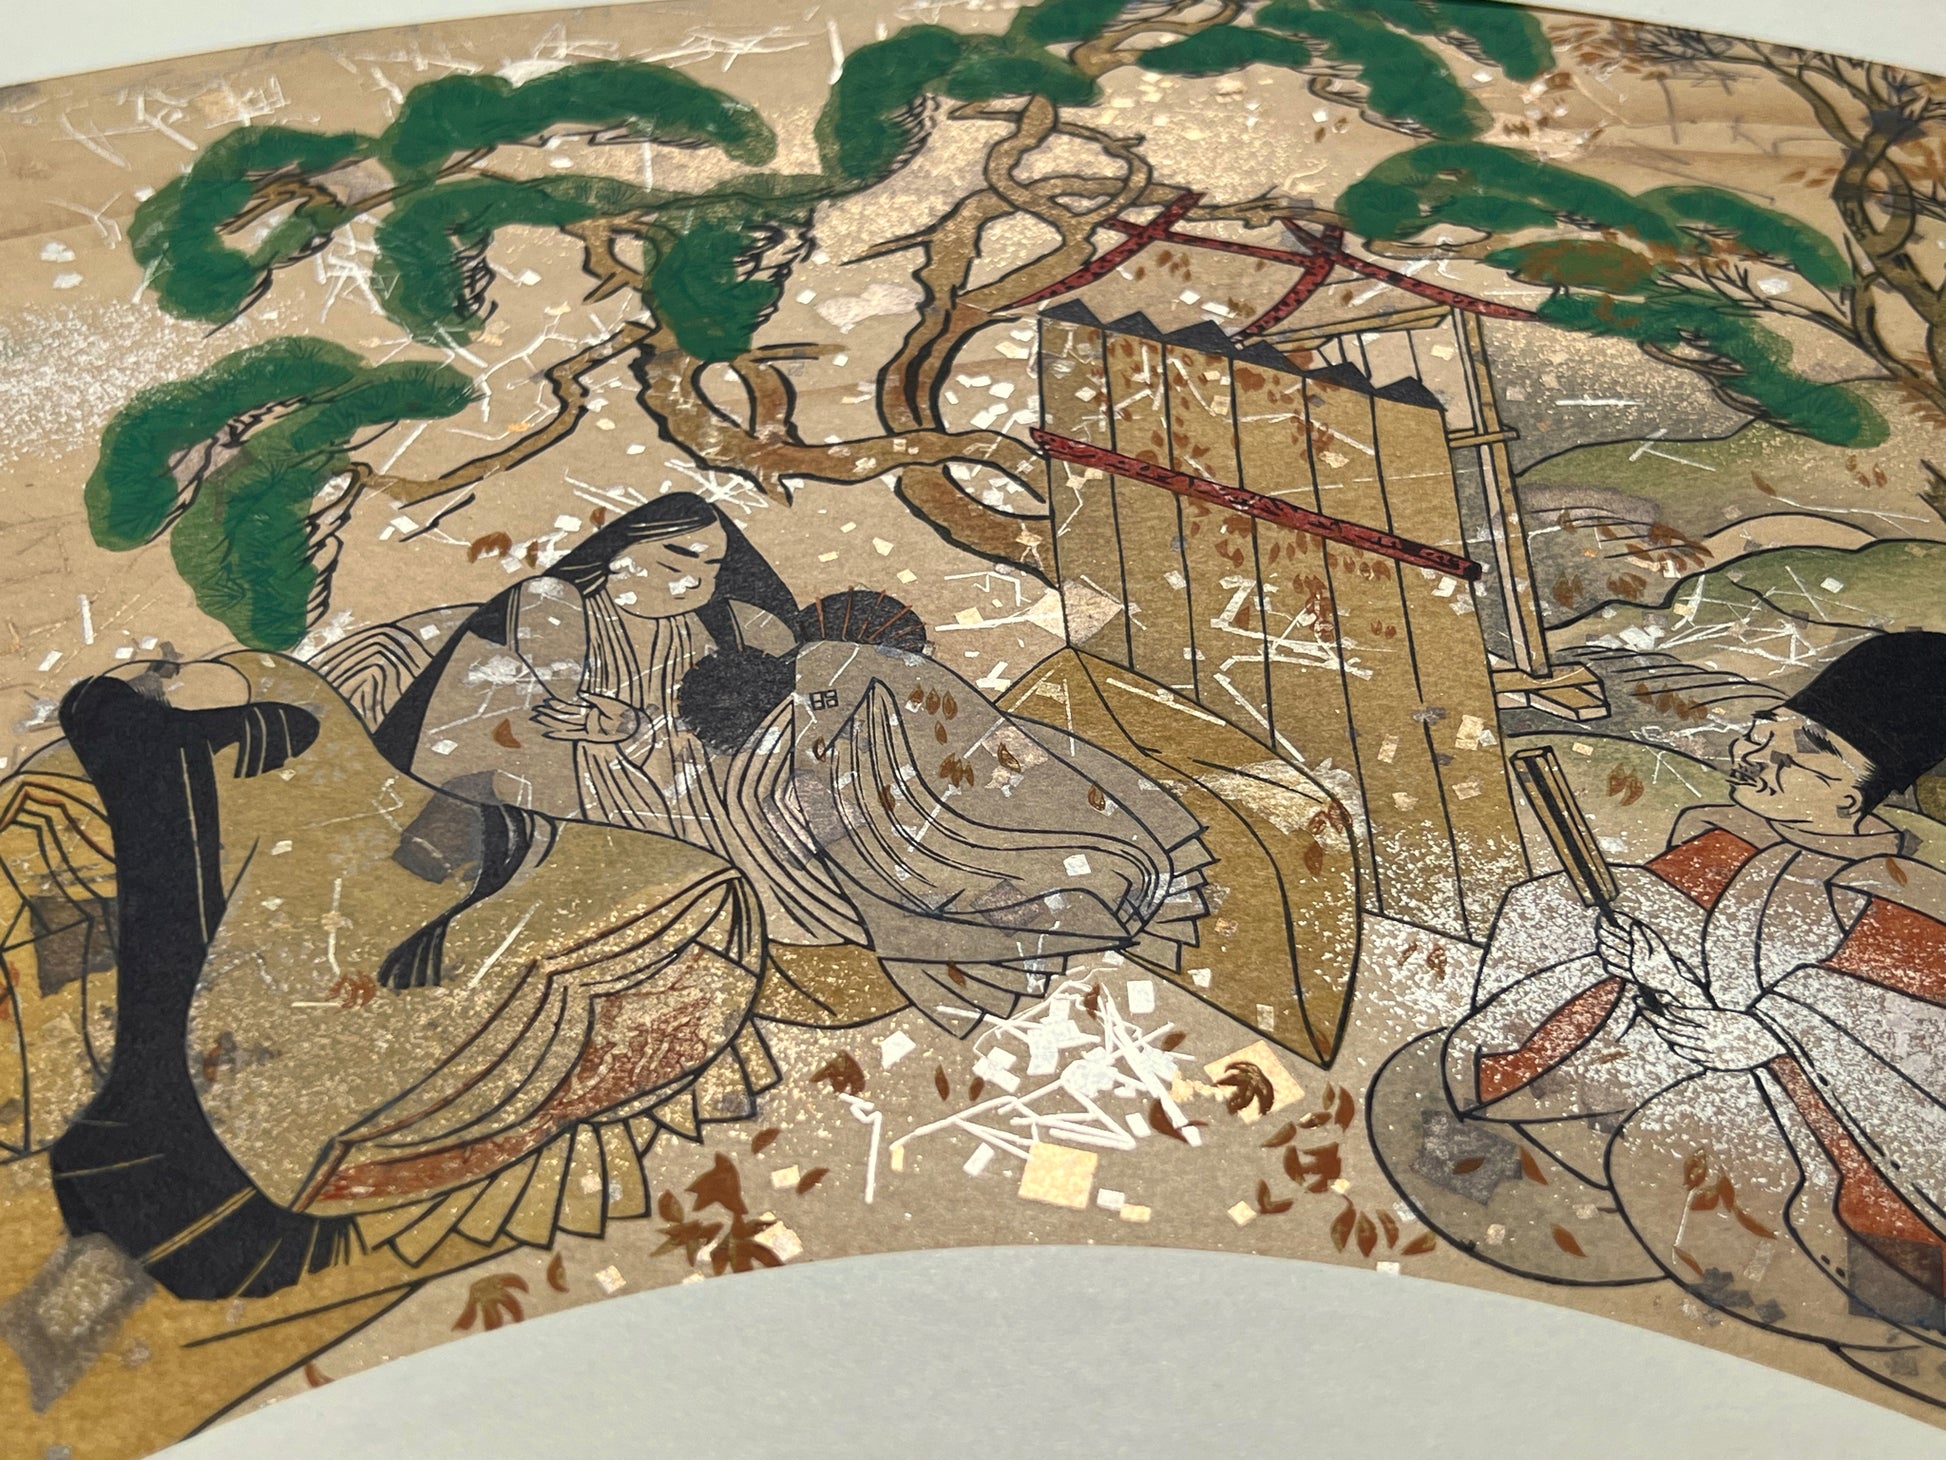 Estampe japonaise en forme d'éventail parsemée de fragments d'or et d'argent, deux femmes et un homme assis près d'un pin japonais, détail fragments scintillants.